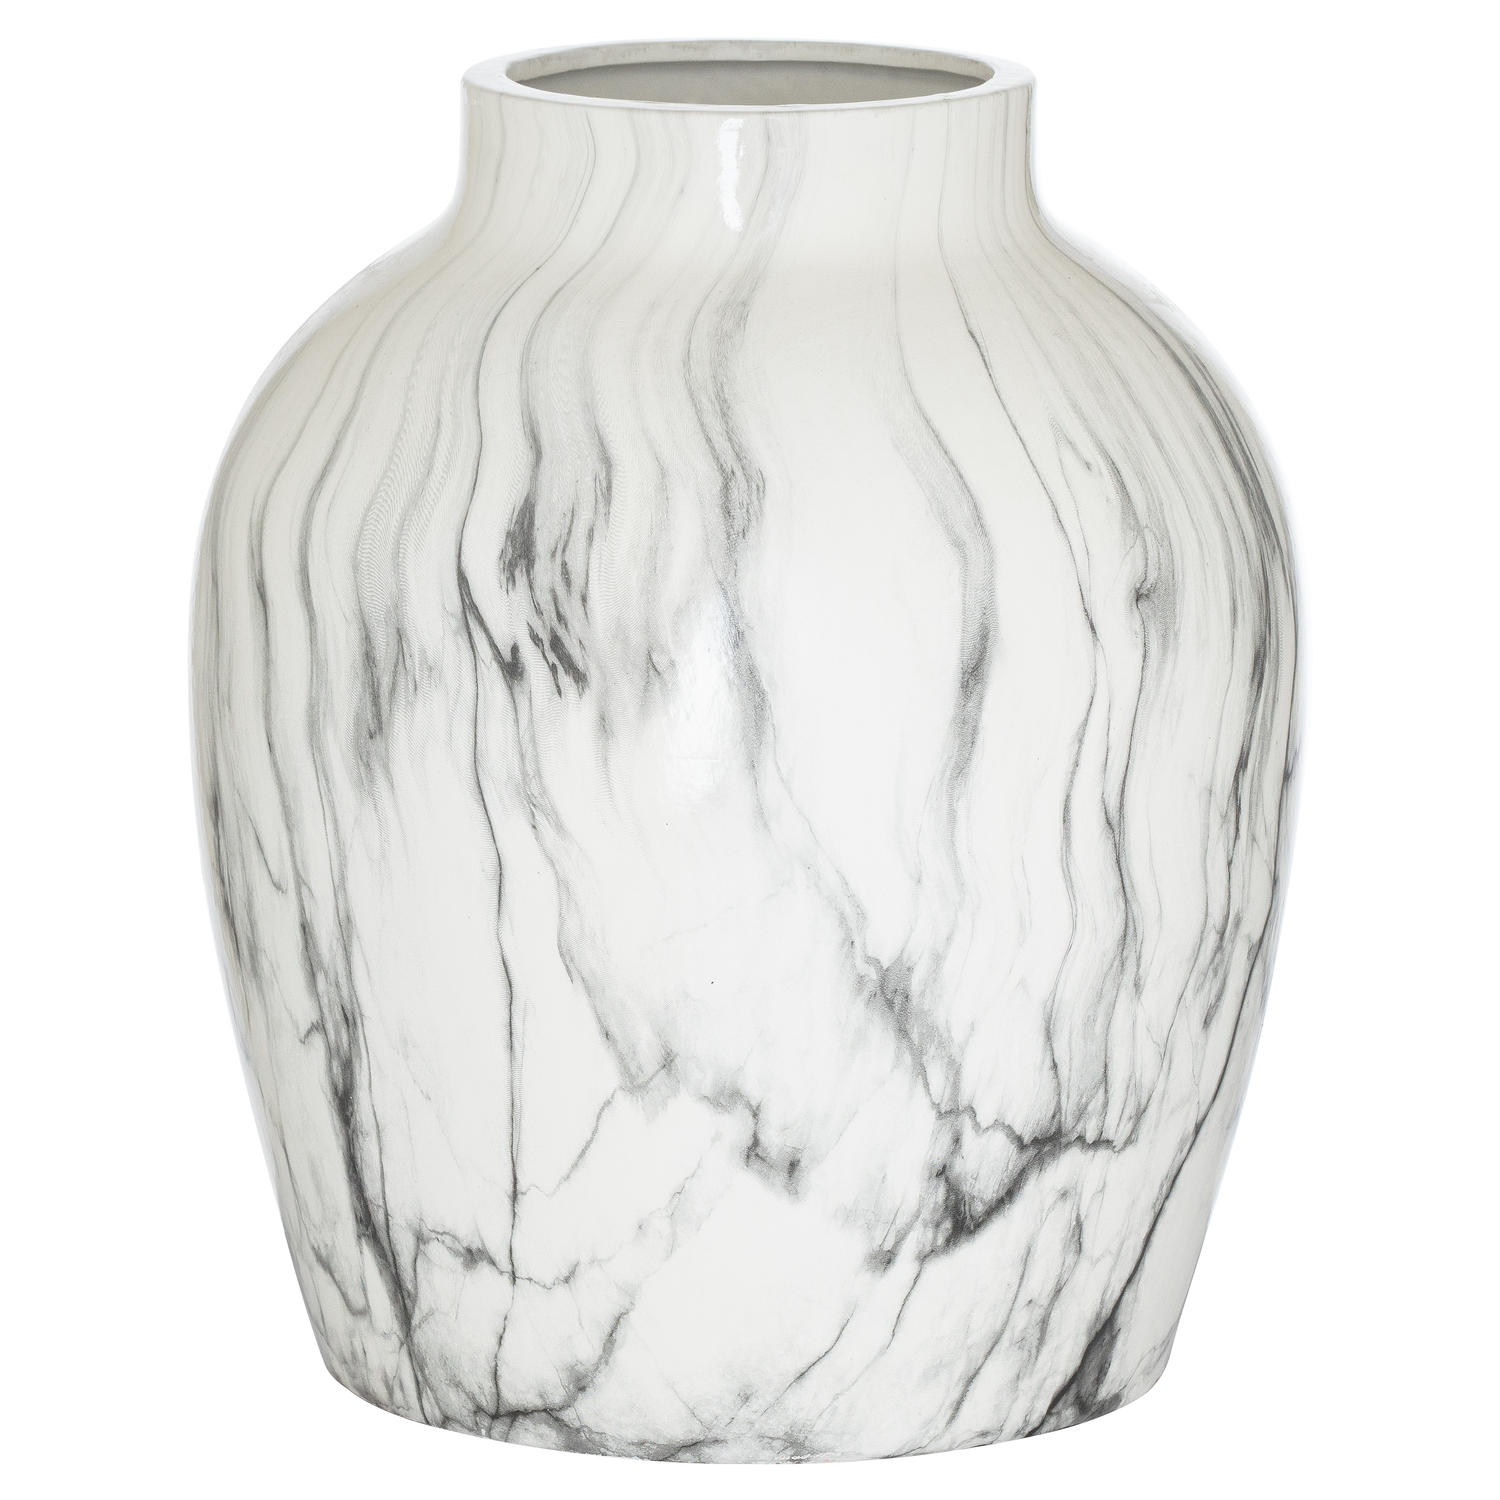 Marble Large Vase - Image 1